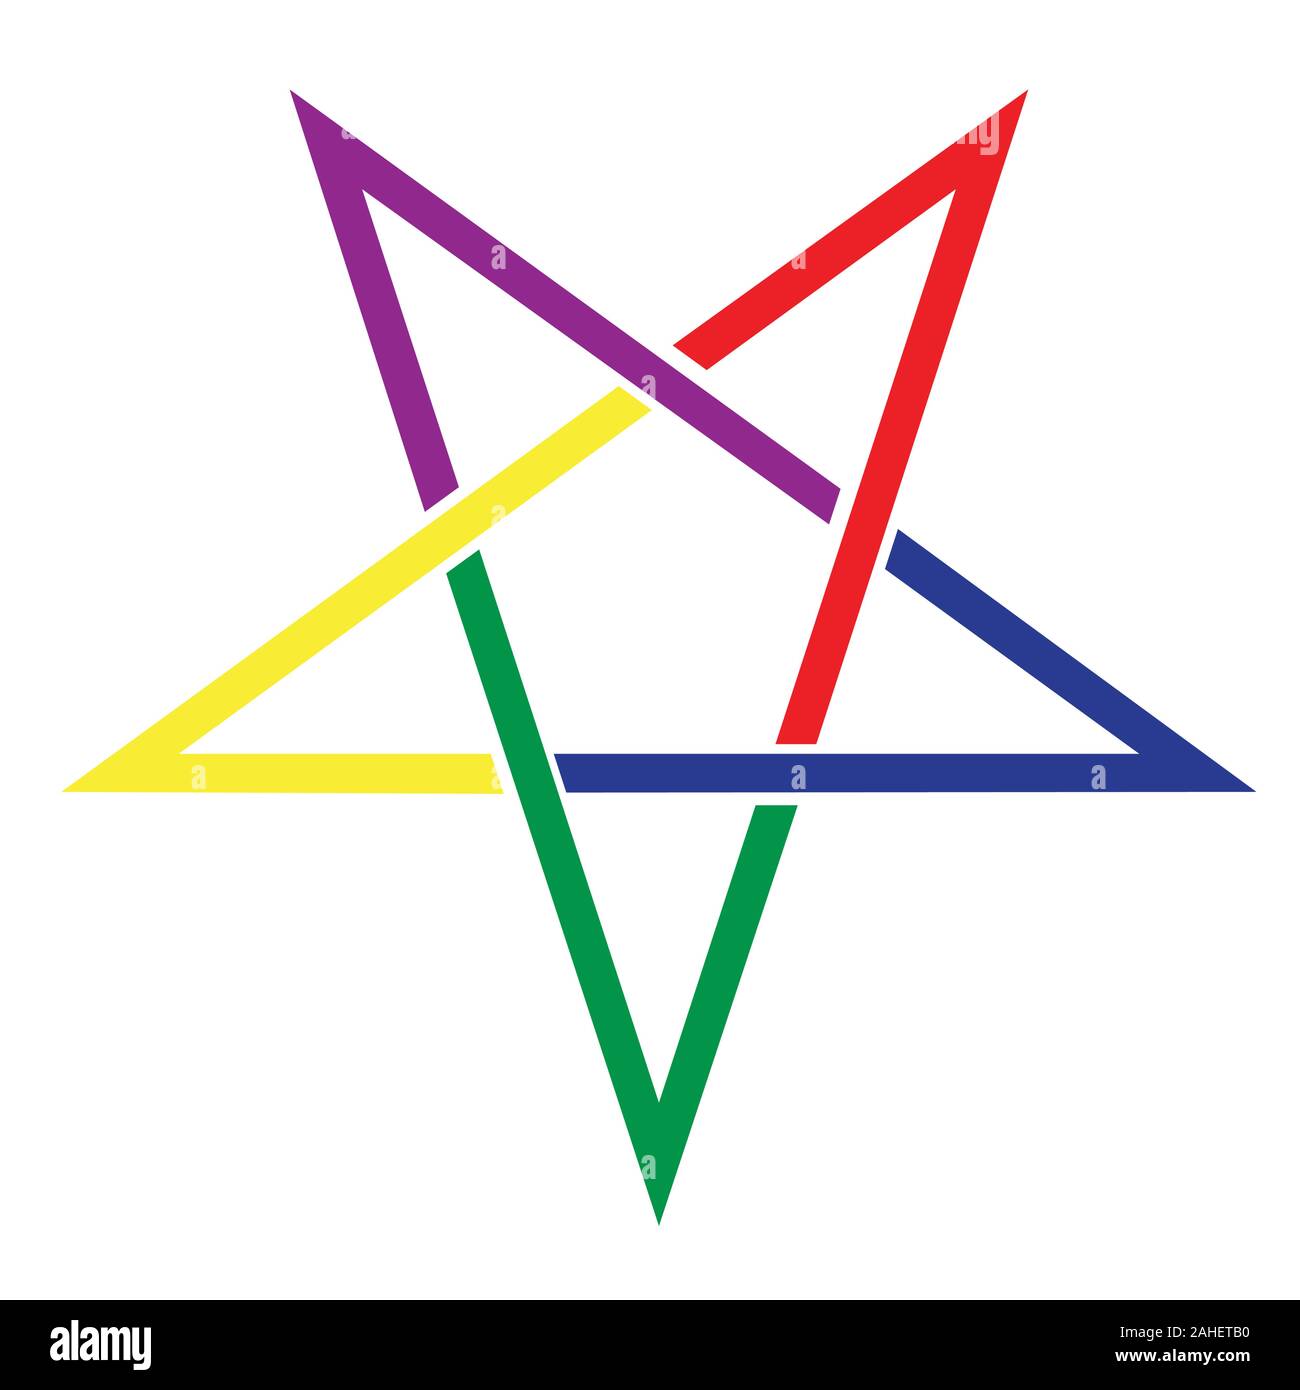 L'antico simbolo del pentangle in colori luminosi su uno sfondo bianco Illustrazione Vettoriale